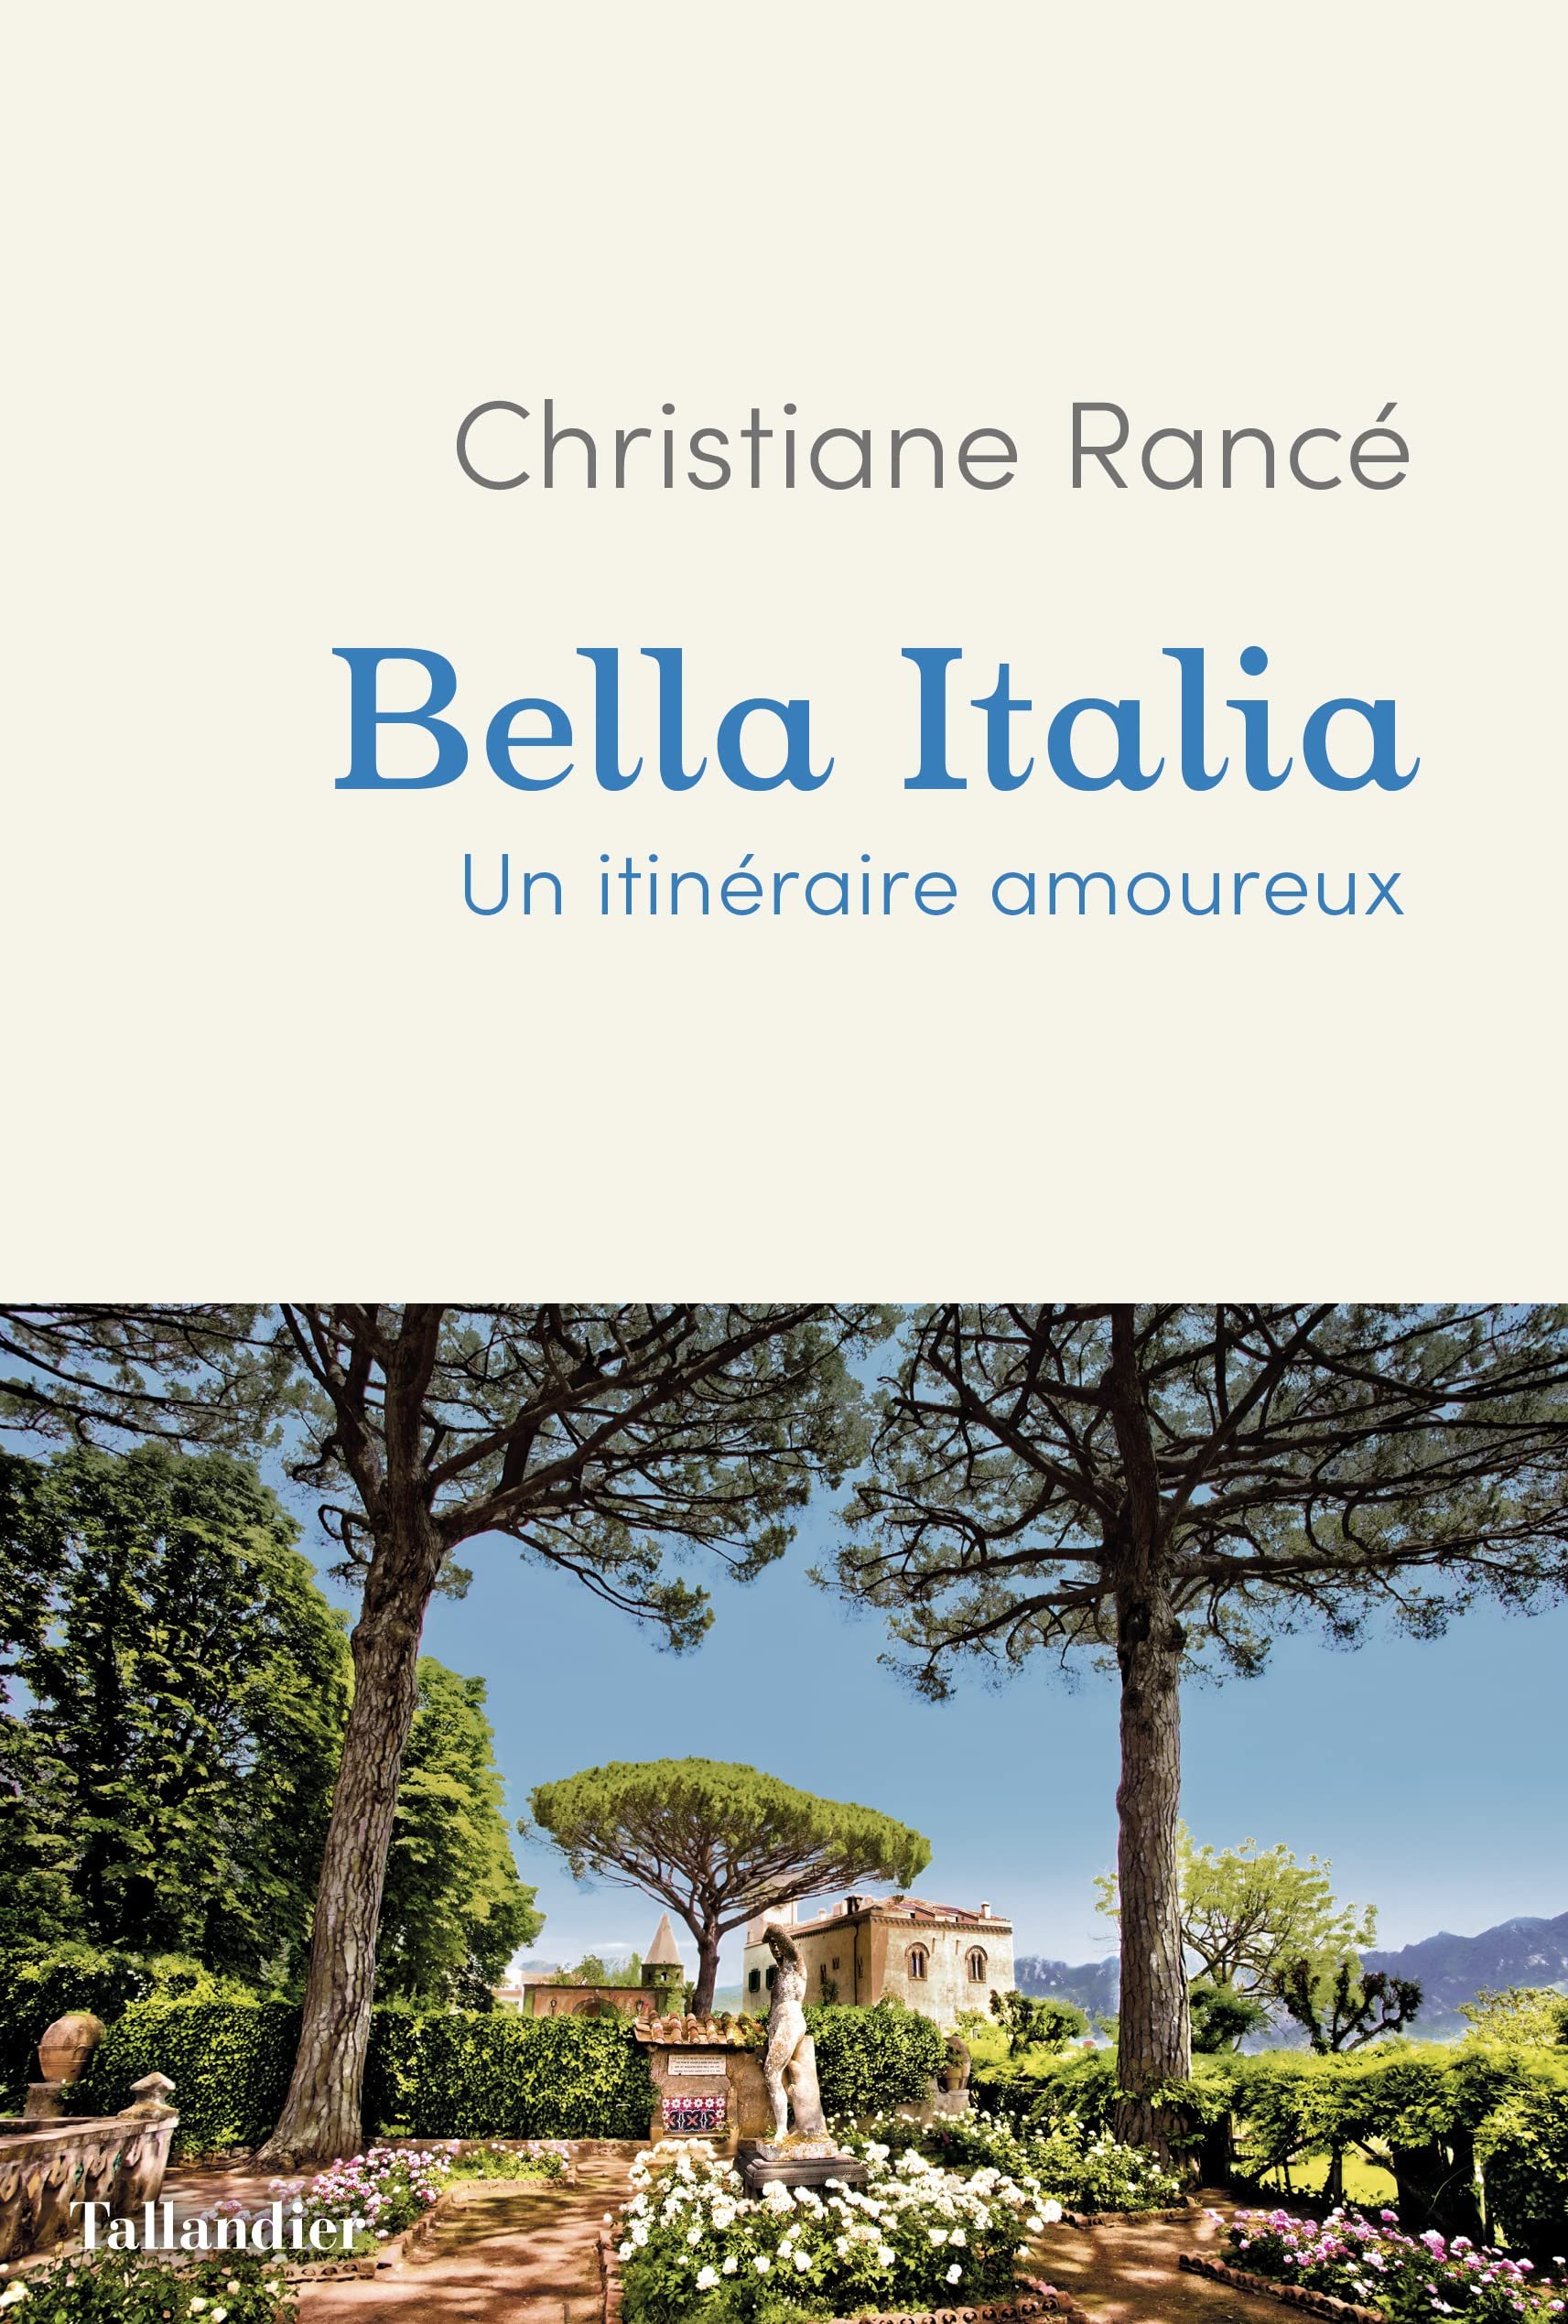 Christiane Rancé – Bella Italia: Un itinéraire amoureux